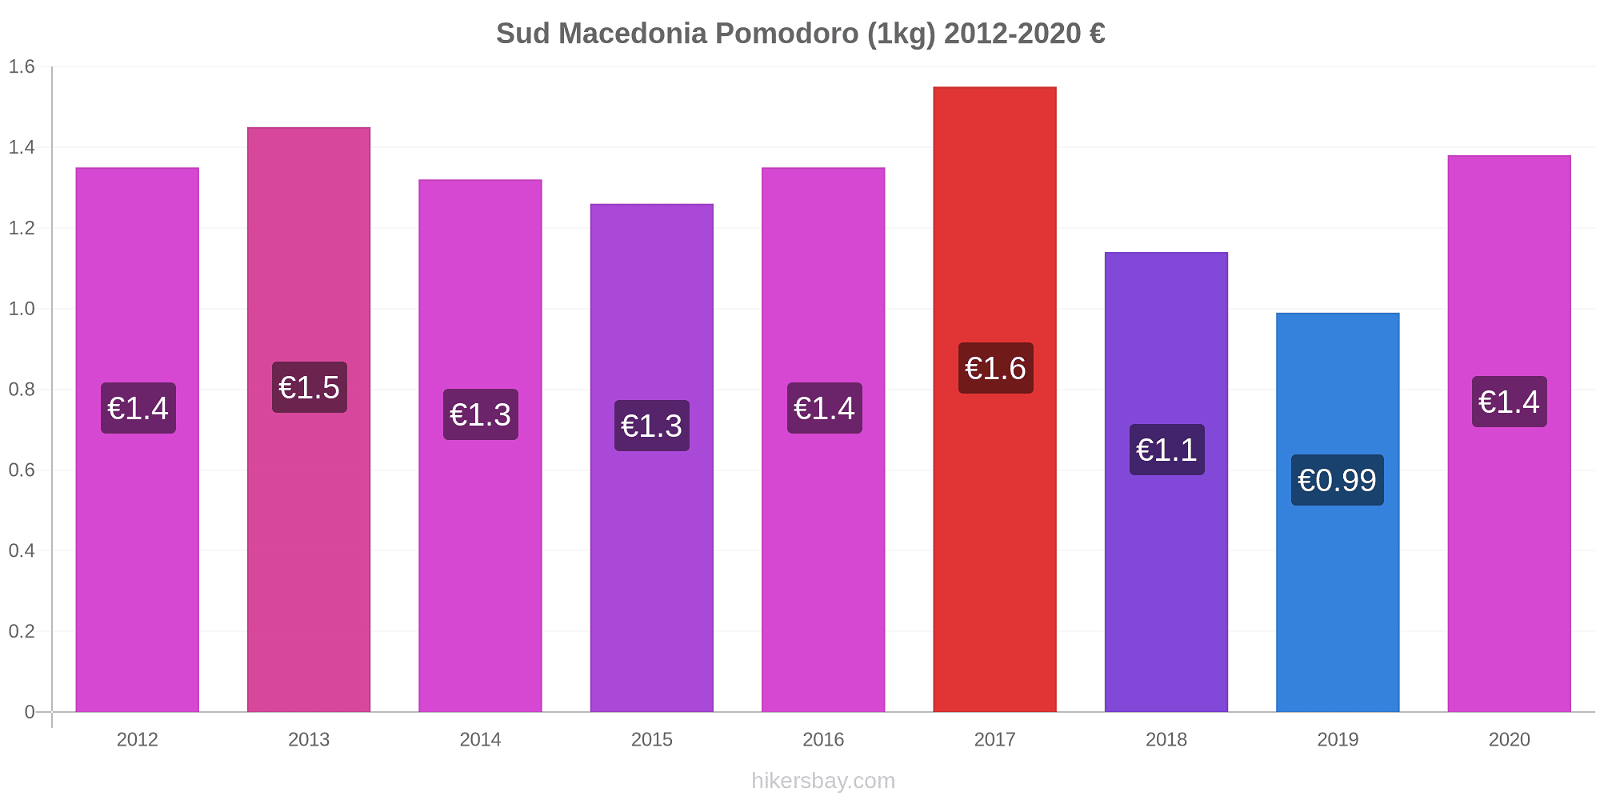 Sud Macedonia variazioni di prezzo Pomodoro (1kg) hikersbay.com